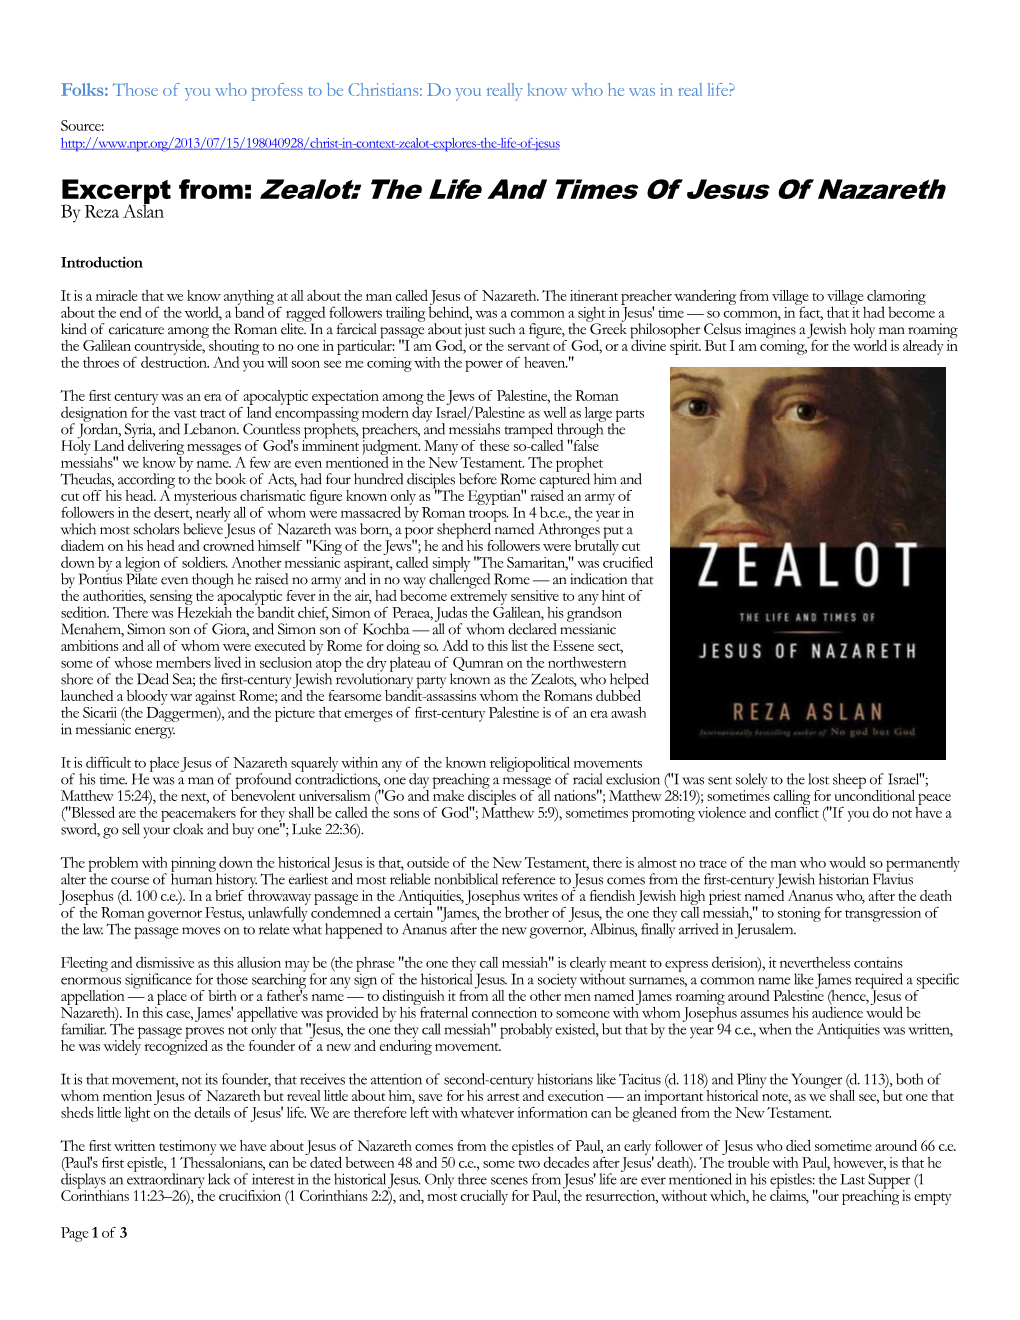 Zealot-Explores-The-Life-Of-Jesus